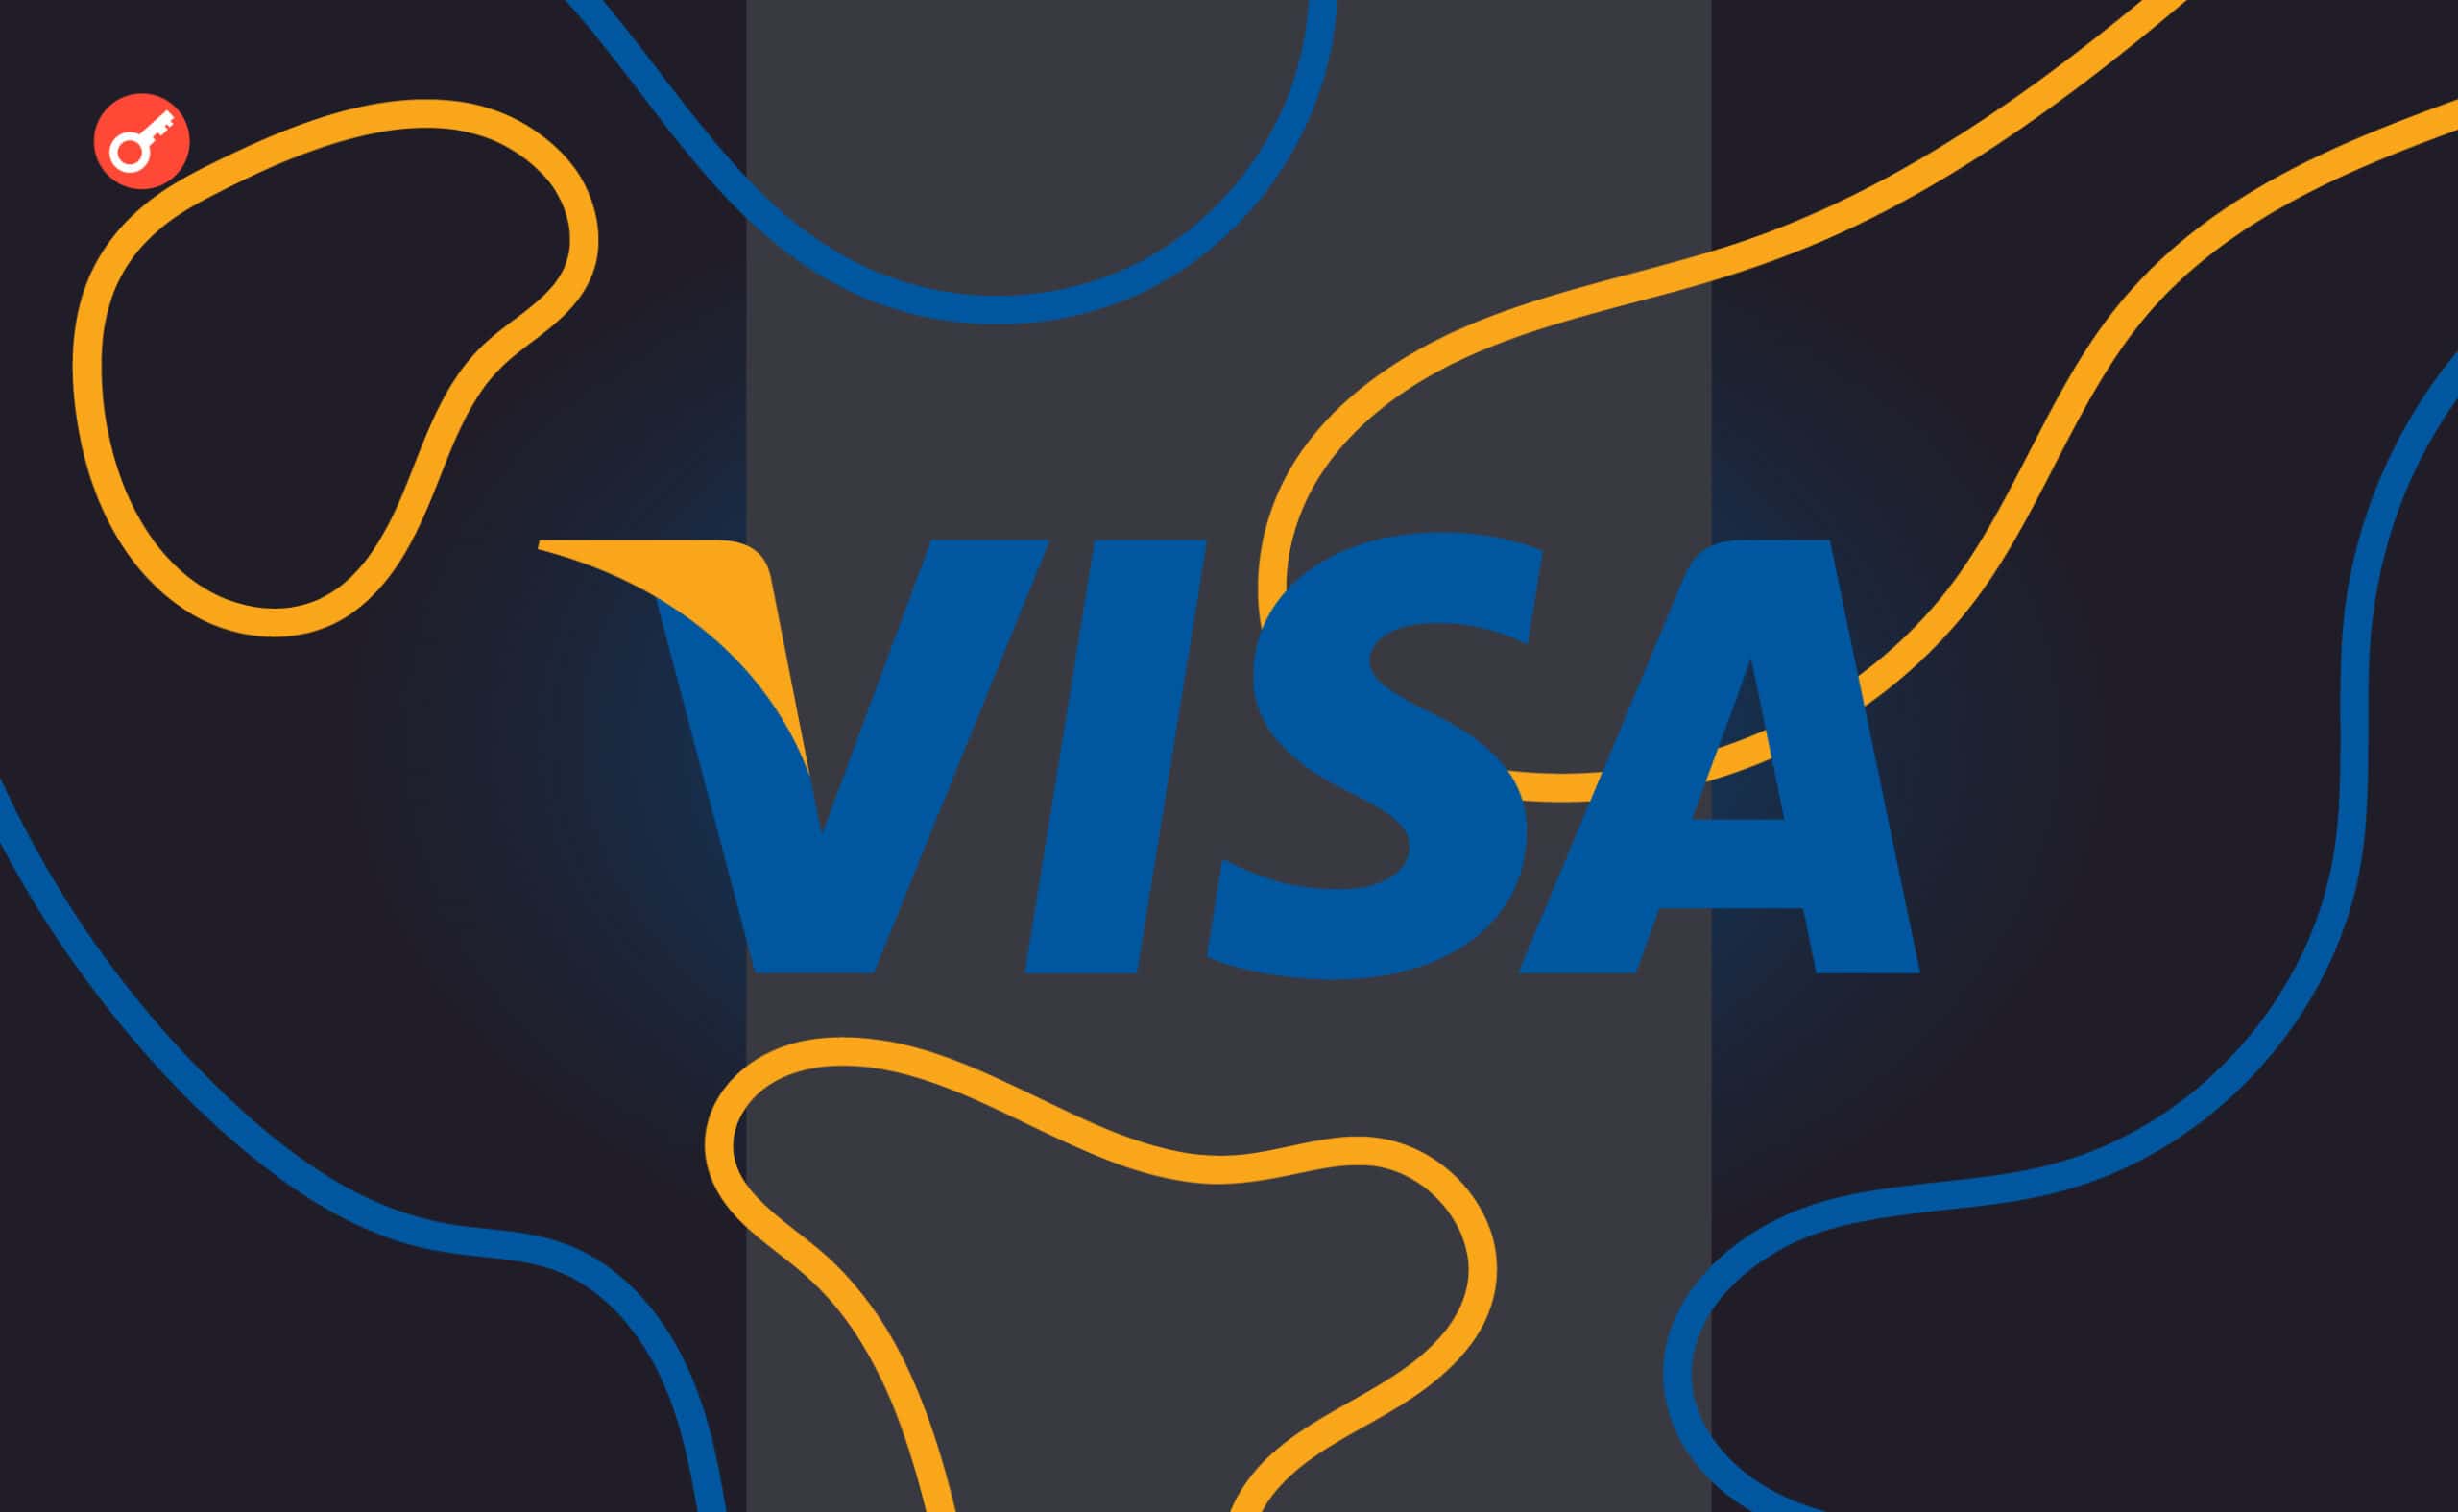 Visa запустила концепт платформы для токенизации продукции малого и среднего бизнеса в Бразилии. Заглавный коллаж новости.